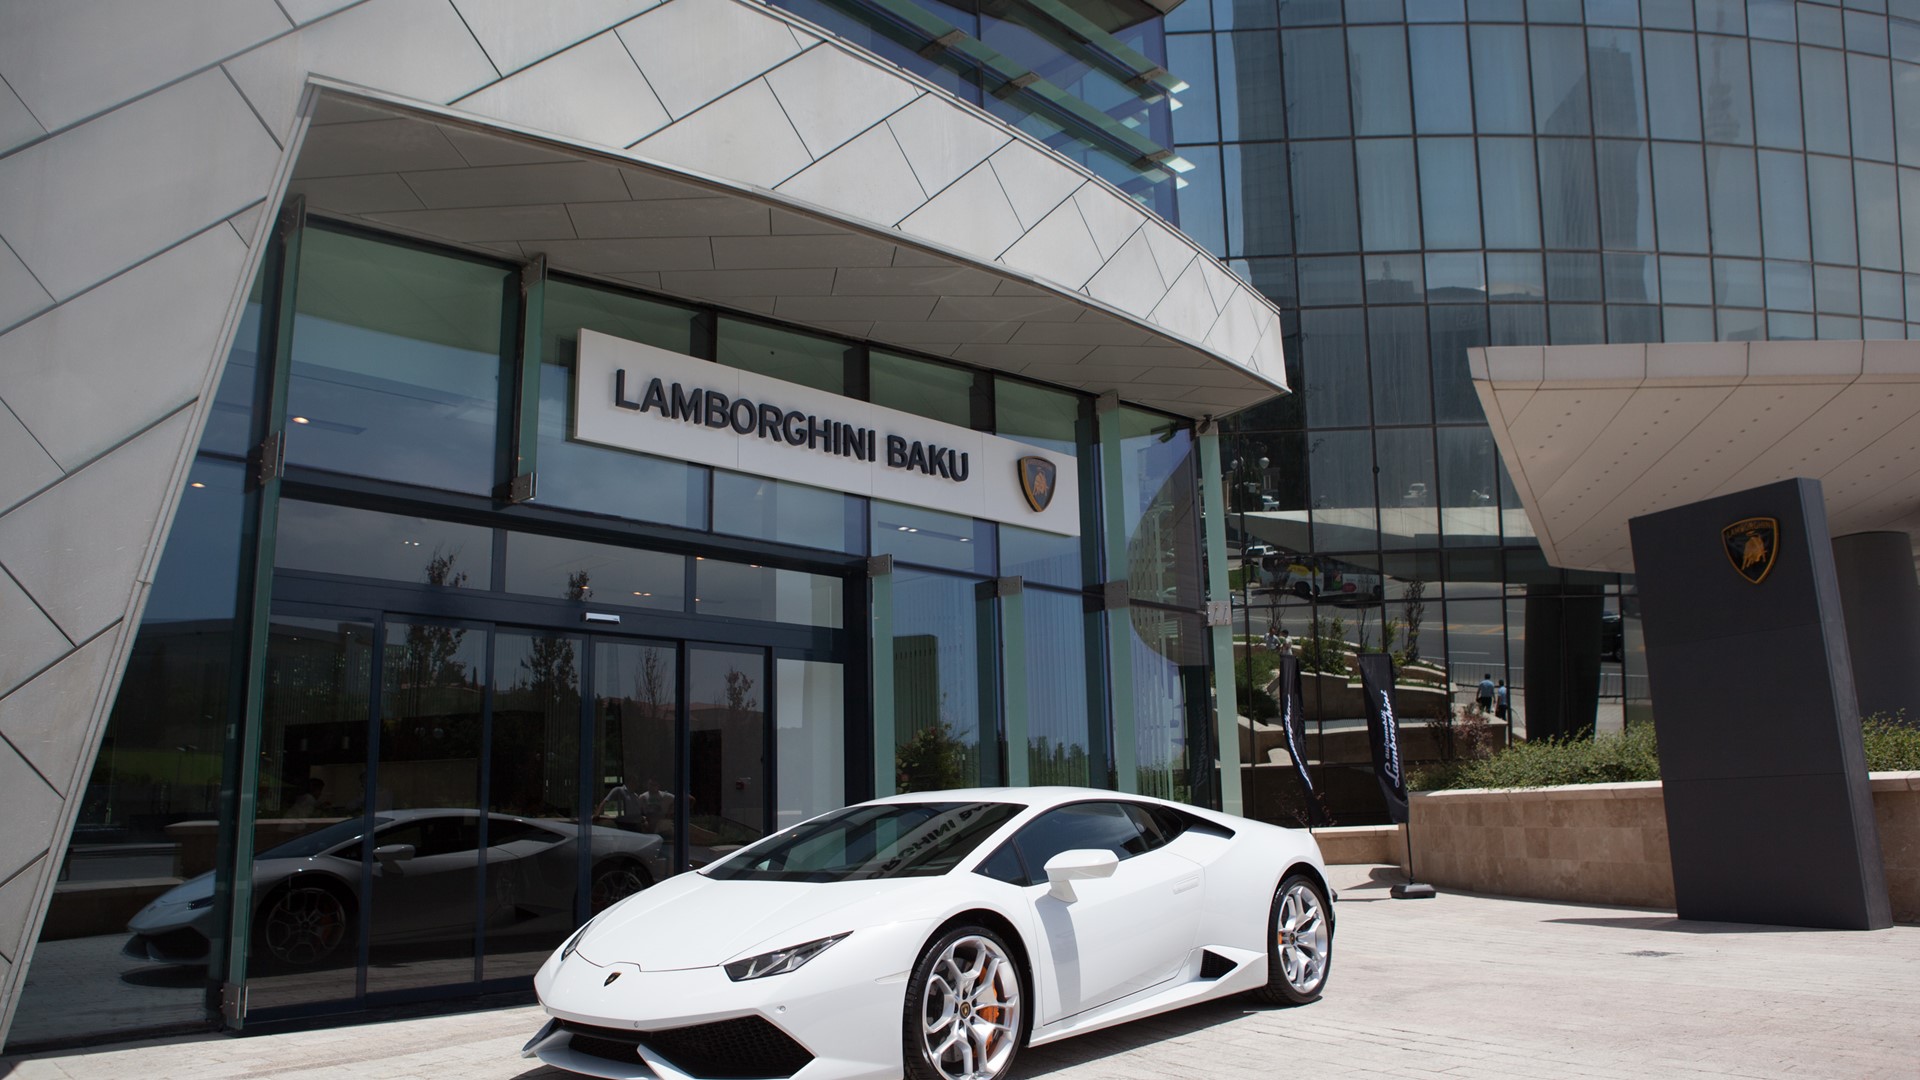 Lamborghini Baku - Azerbaijan Welcomes New Lamborghini ...